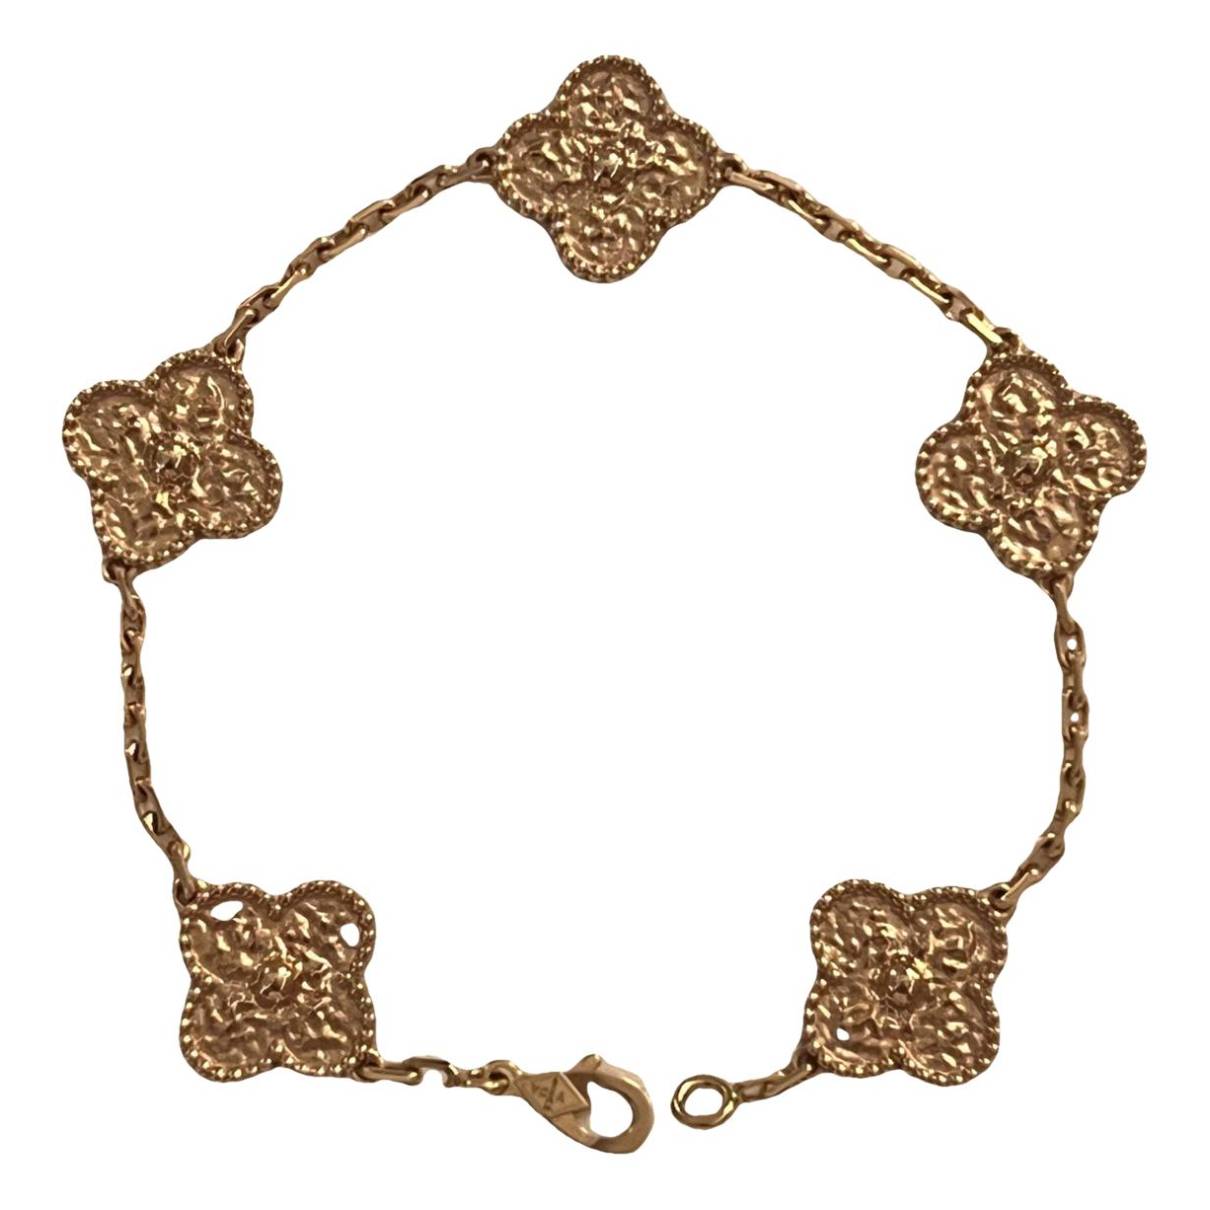 vintage alhambra bracelet